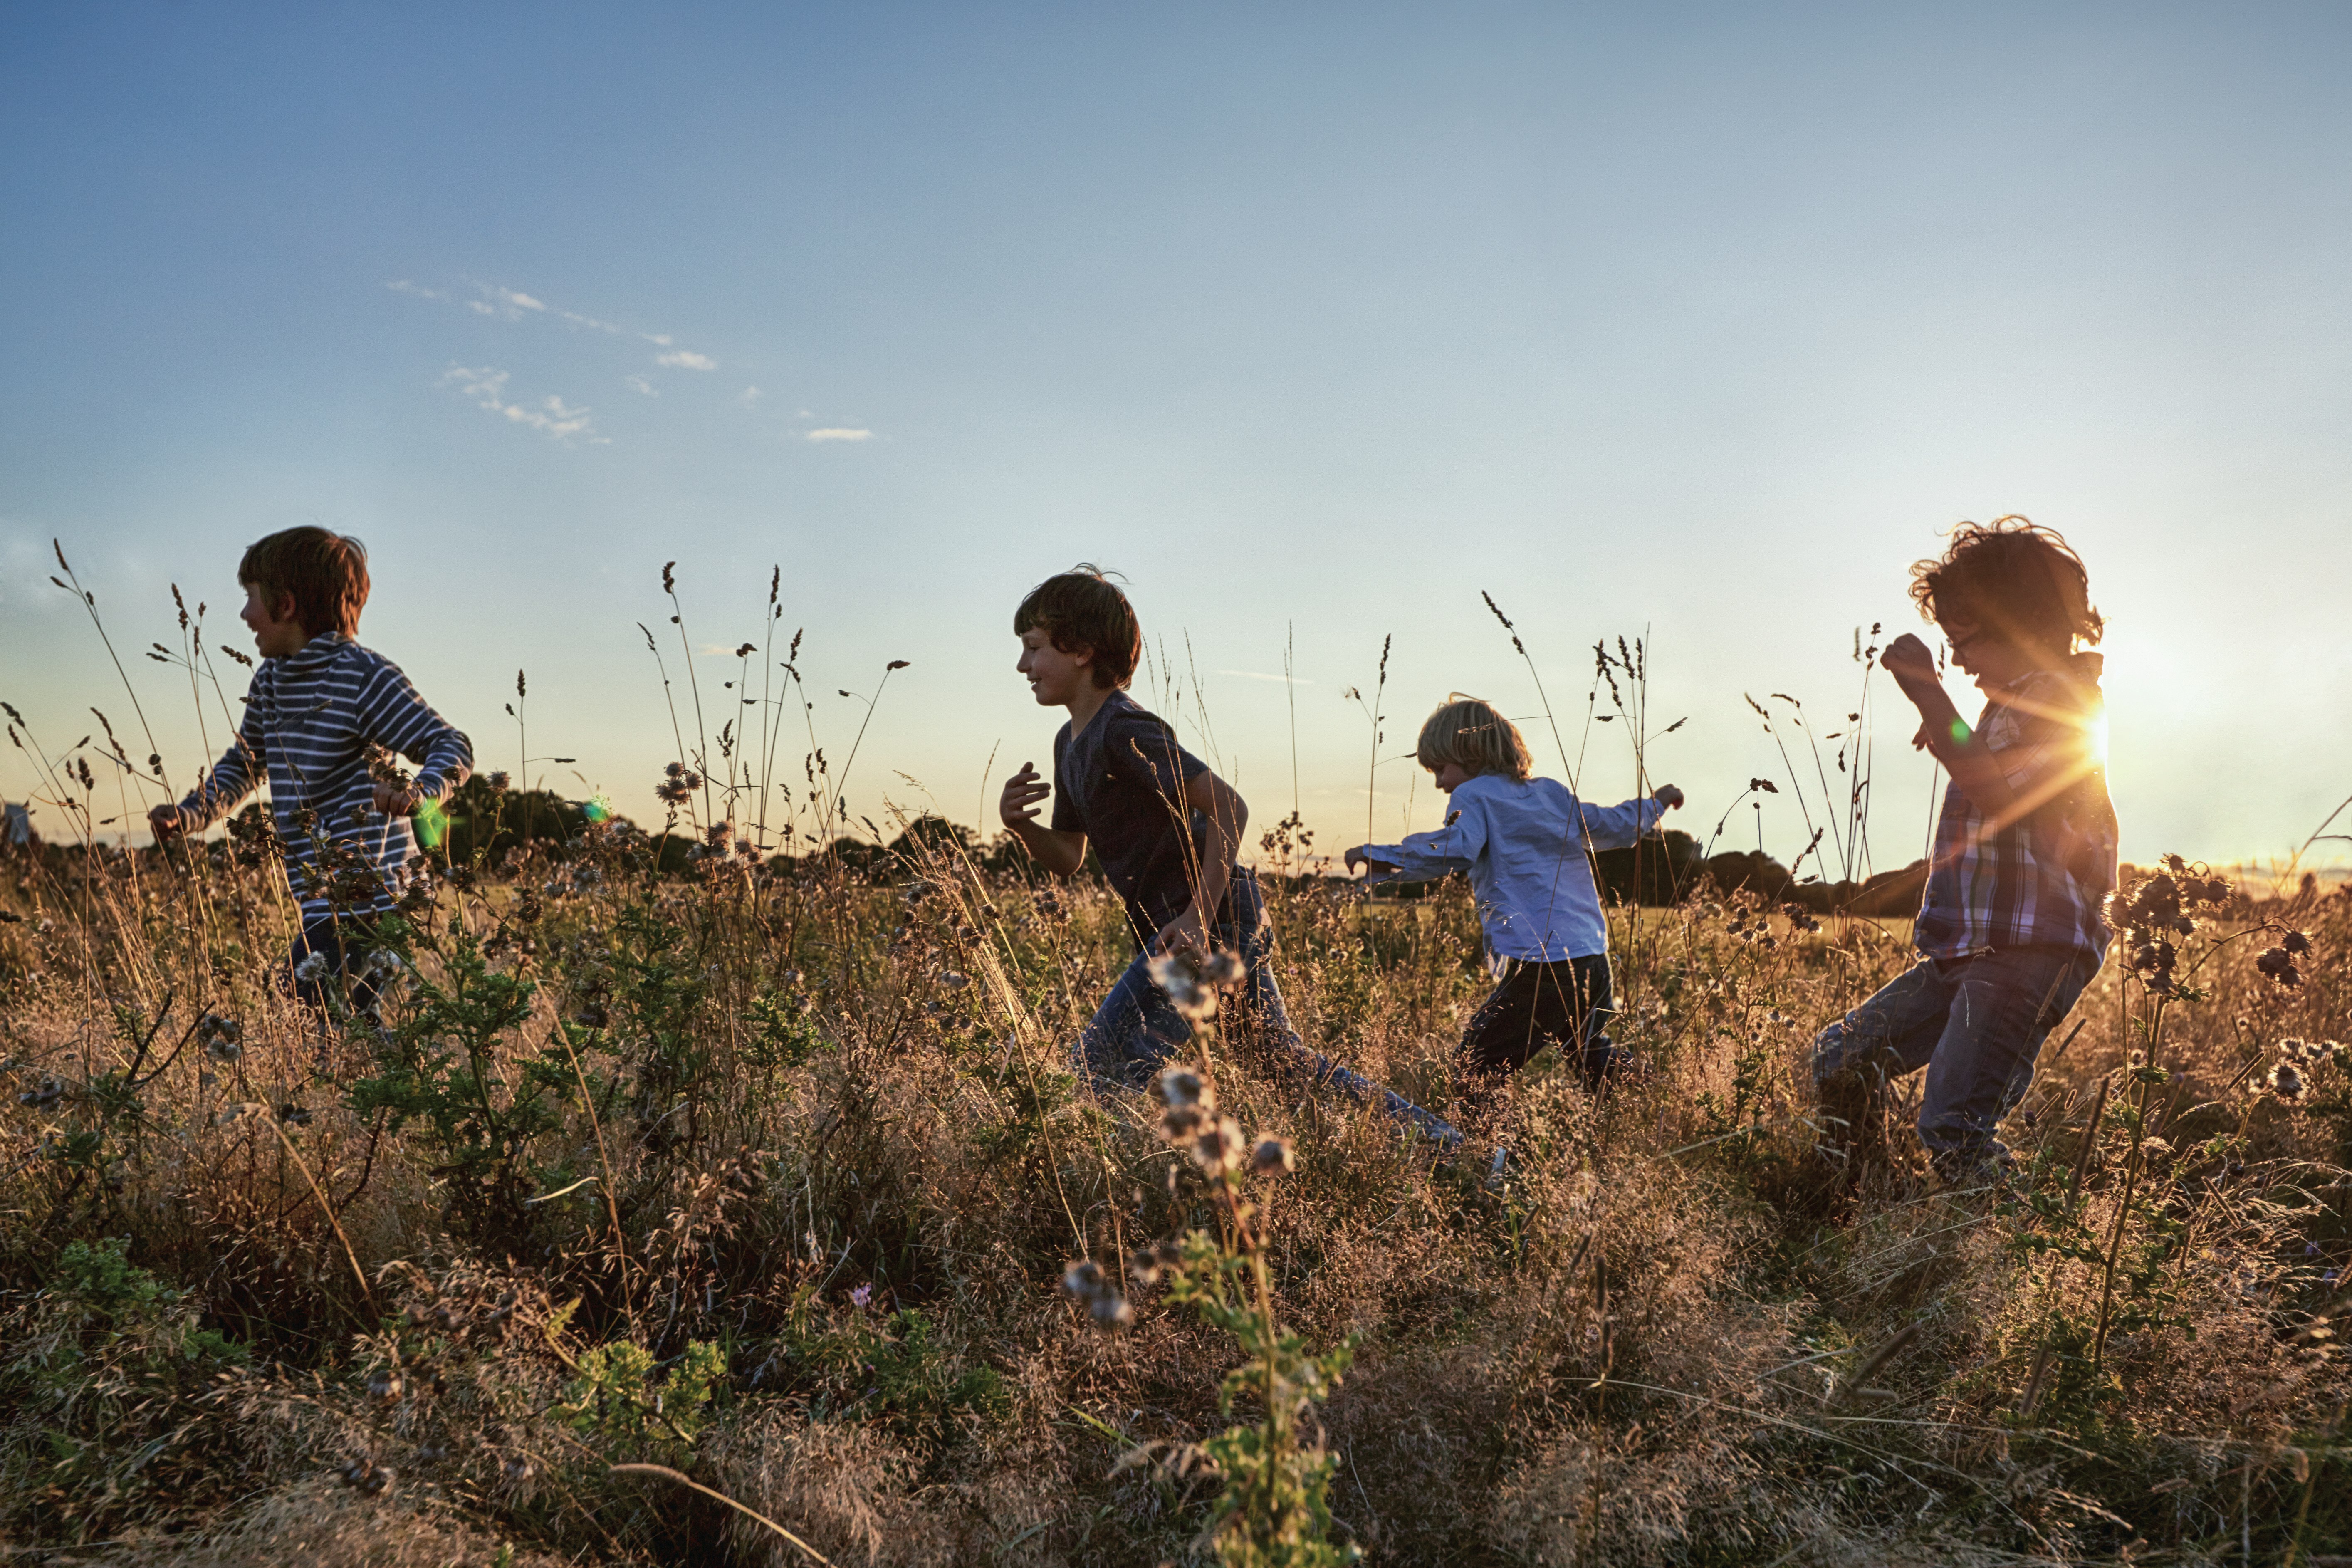 Children Running in a Field